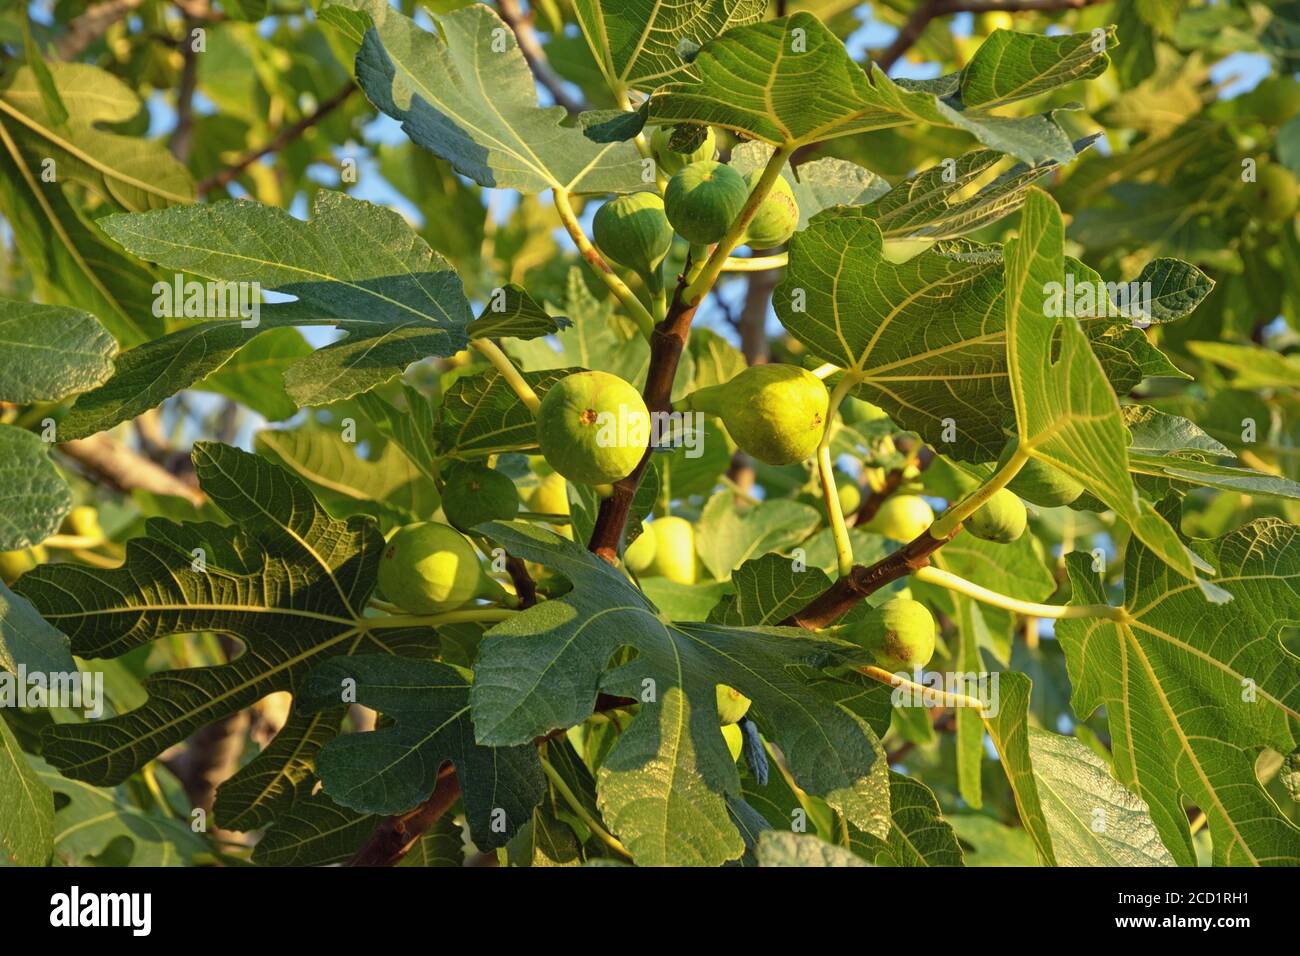 Branches de figuier (Ficus carica) avec feuilles et fruits Banque D'Images